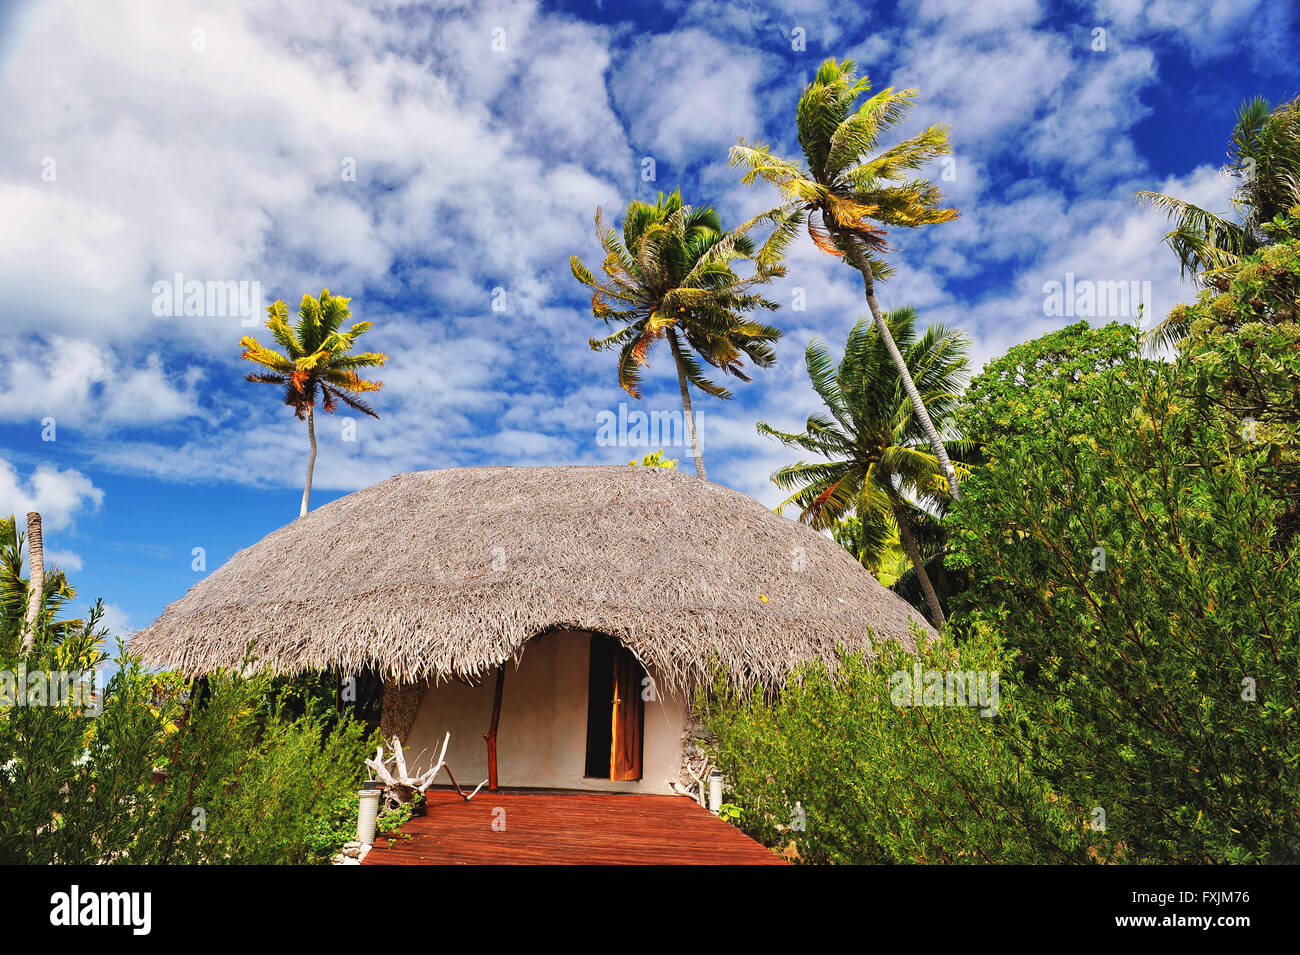 Tikehau, Atoll des Tuamotu-Inseln, Polynesien. Ein Echo-Resort mitten im Grün der Palmen mit eine schöne Postkarte-Himmel Stockfoto